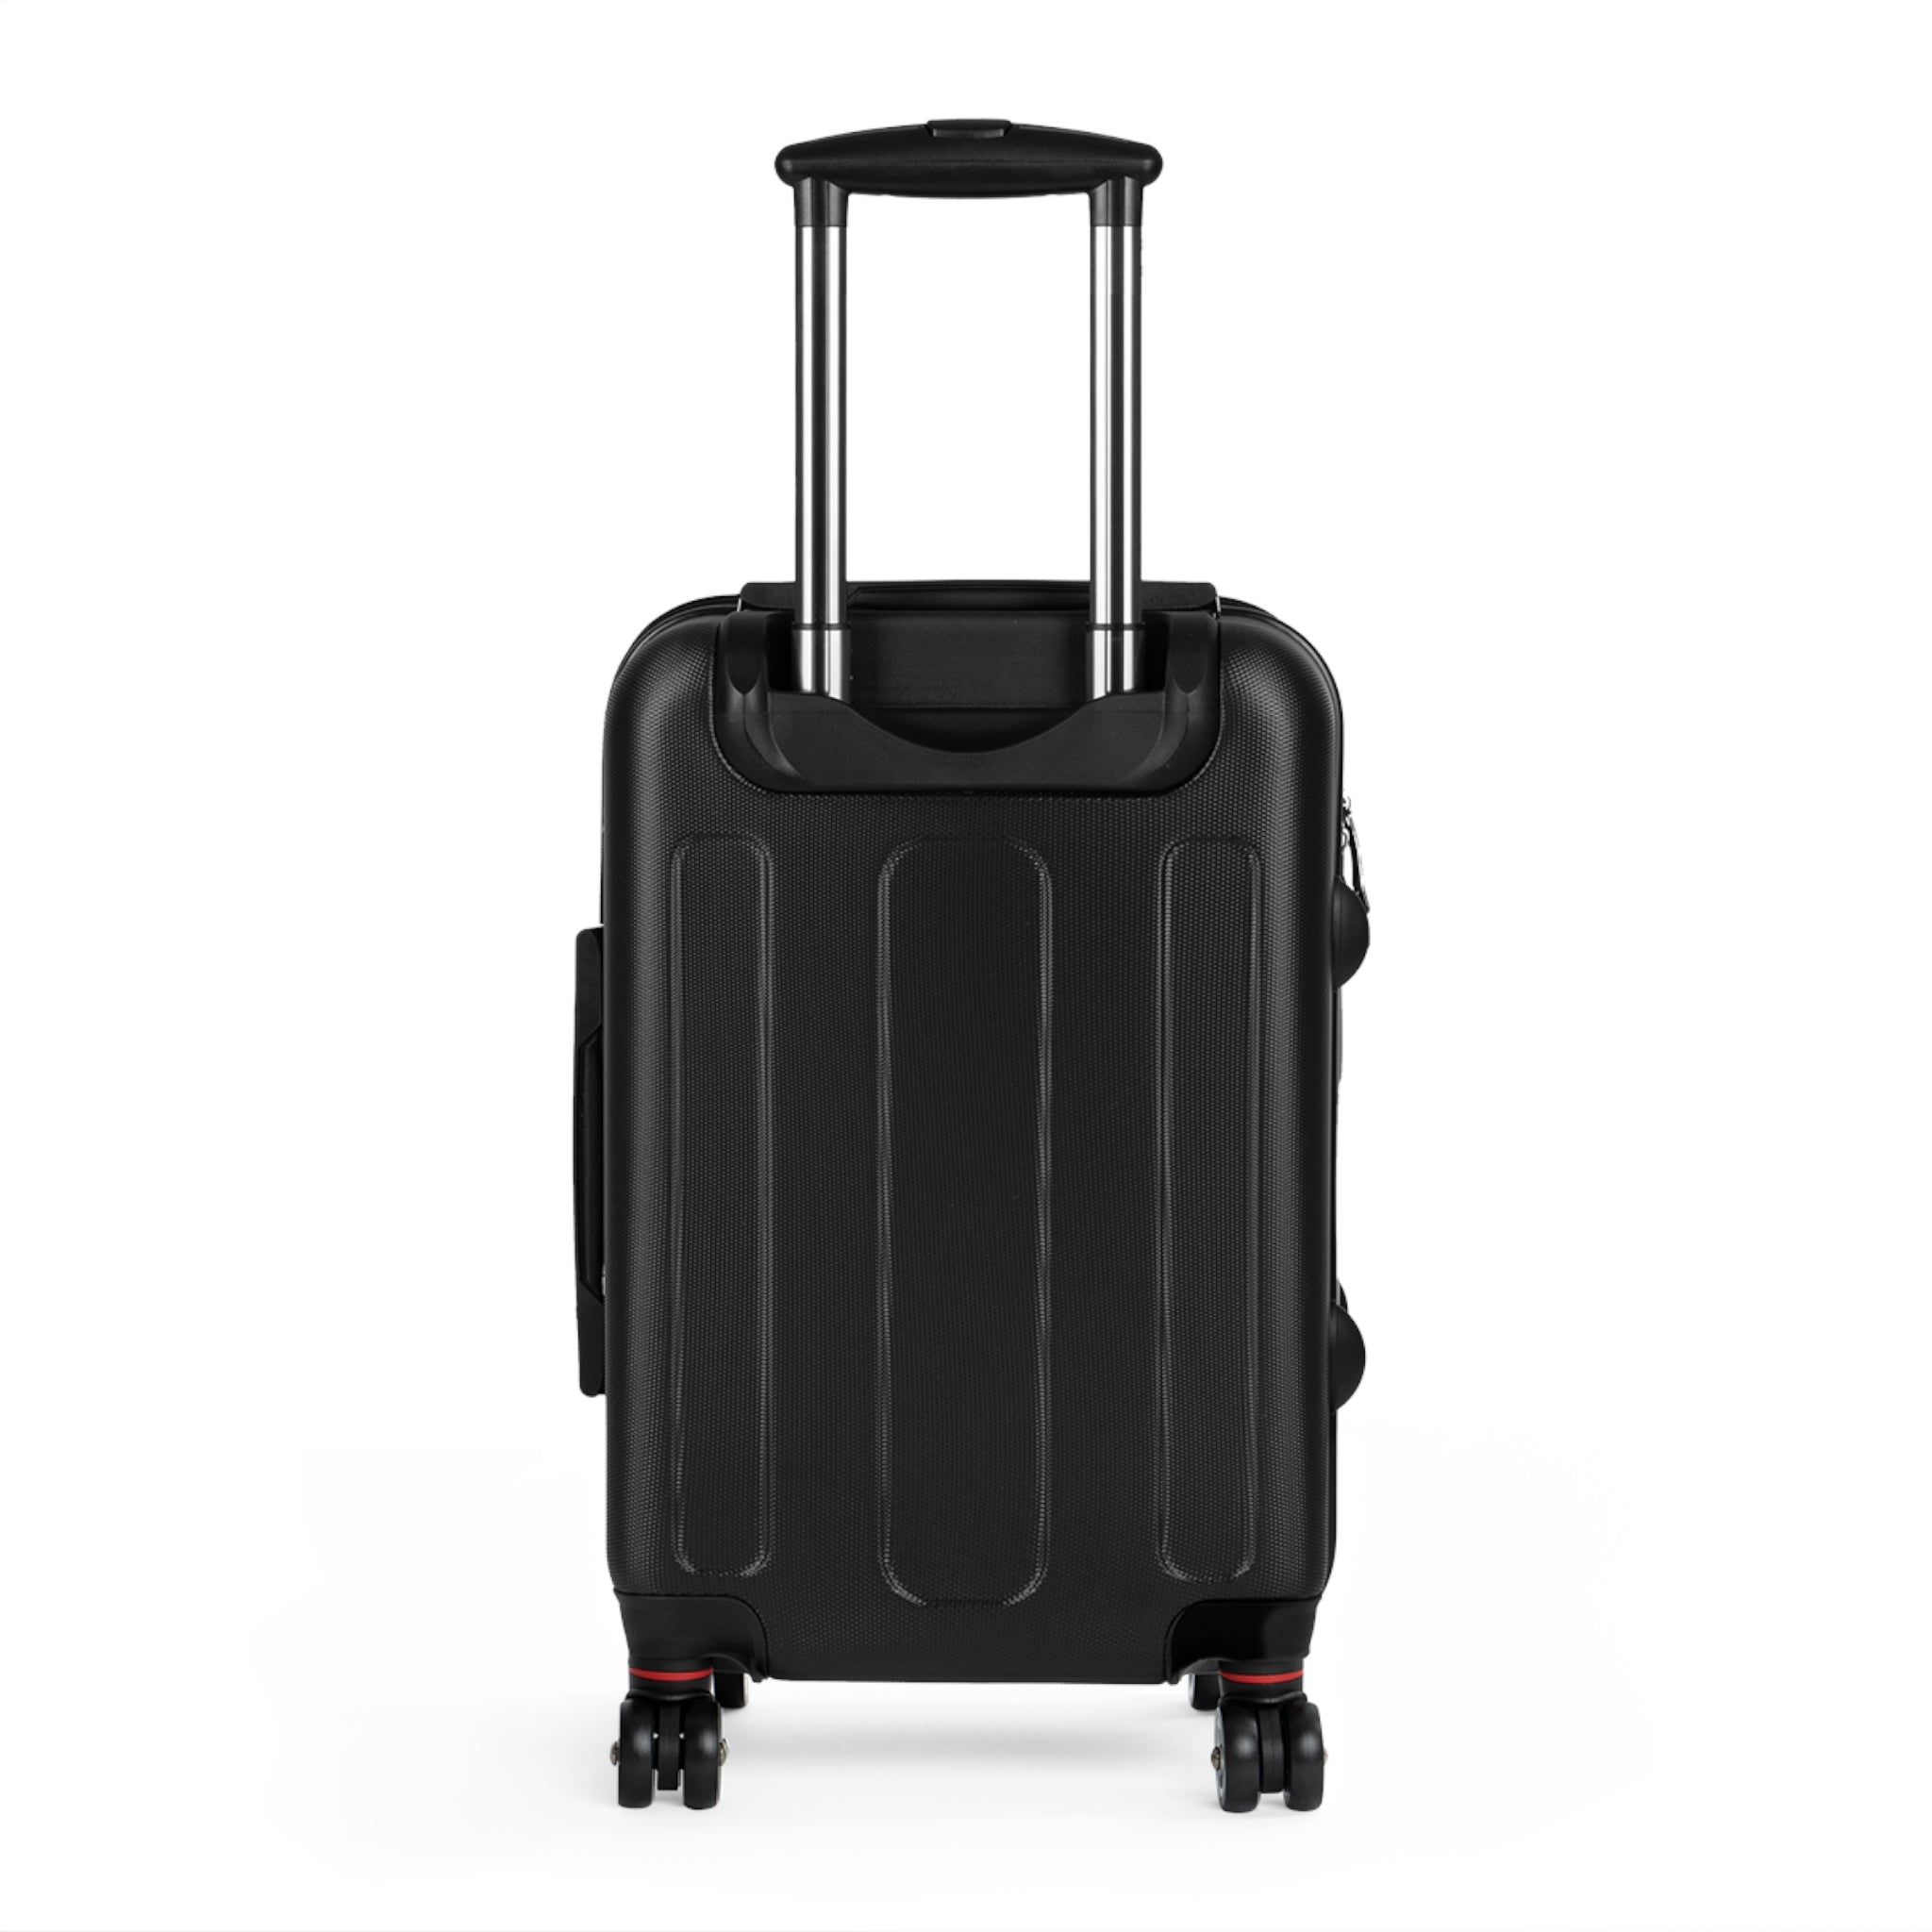 SK x Bugz Suitcase